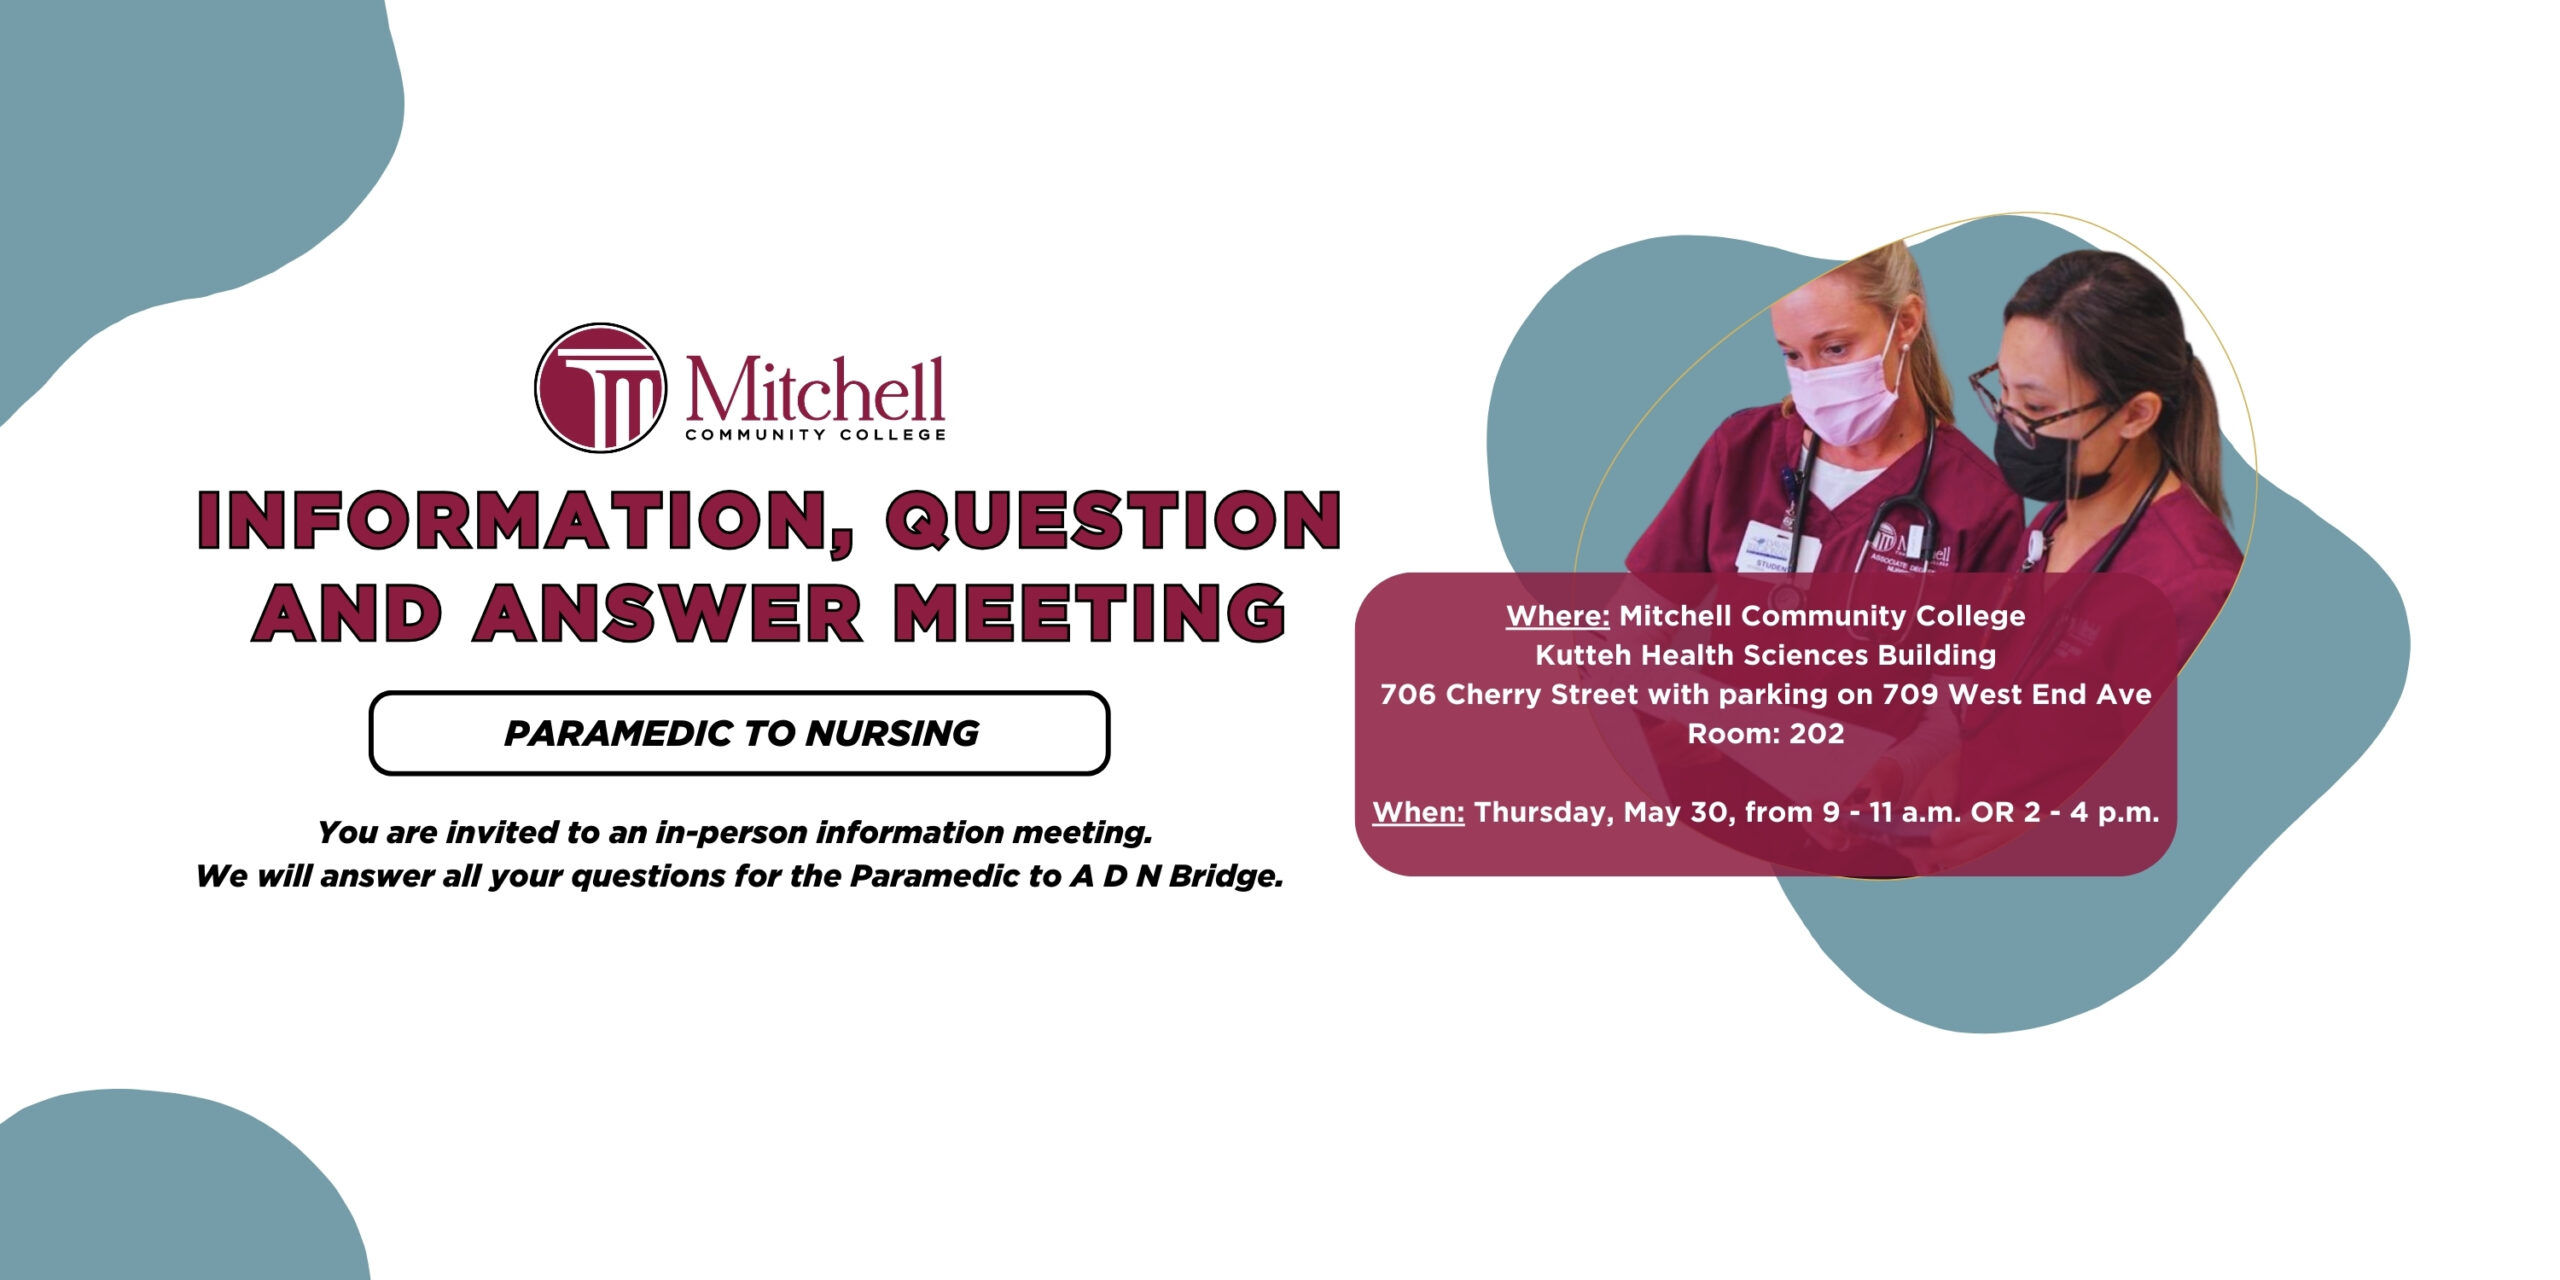 "Bilgilendirme, soru-cevap toplantısı | Paramedic'ten Hemşireliğe | Birebir bilgilendirme toplantısına davetlisiniz. Paramedik'ten ADN Köprüsü'ne kadar tüm sorularınızı yanıtlayacağız. | Nerede: Mitchell Community College - Kutteh Sağlık Bilimleri Binası - 706 Cherry Street, 709 West End Ave'de park yeri - Oda: 202 - Ne zaman: 30 Mayıs Perşembe, 9:11 - 2:4 VEYA XNUMX:XNUMX - XNUMX:XNUMX".